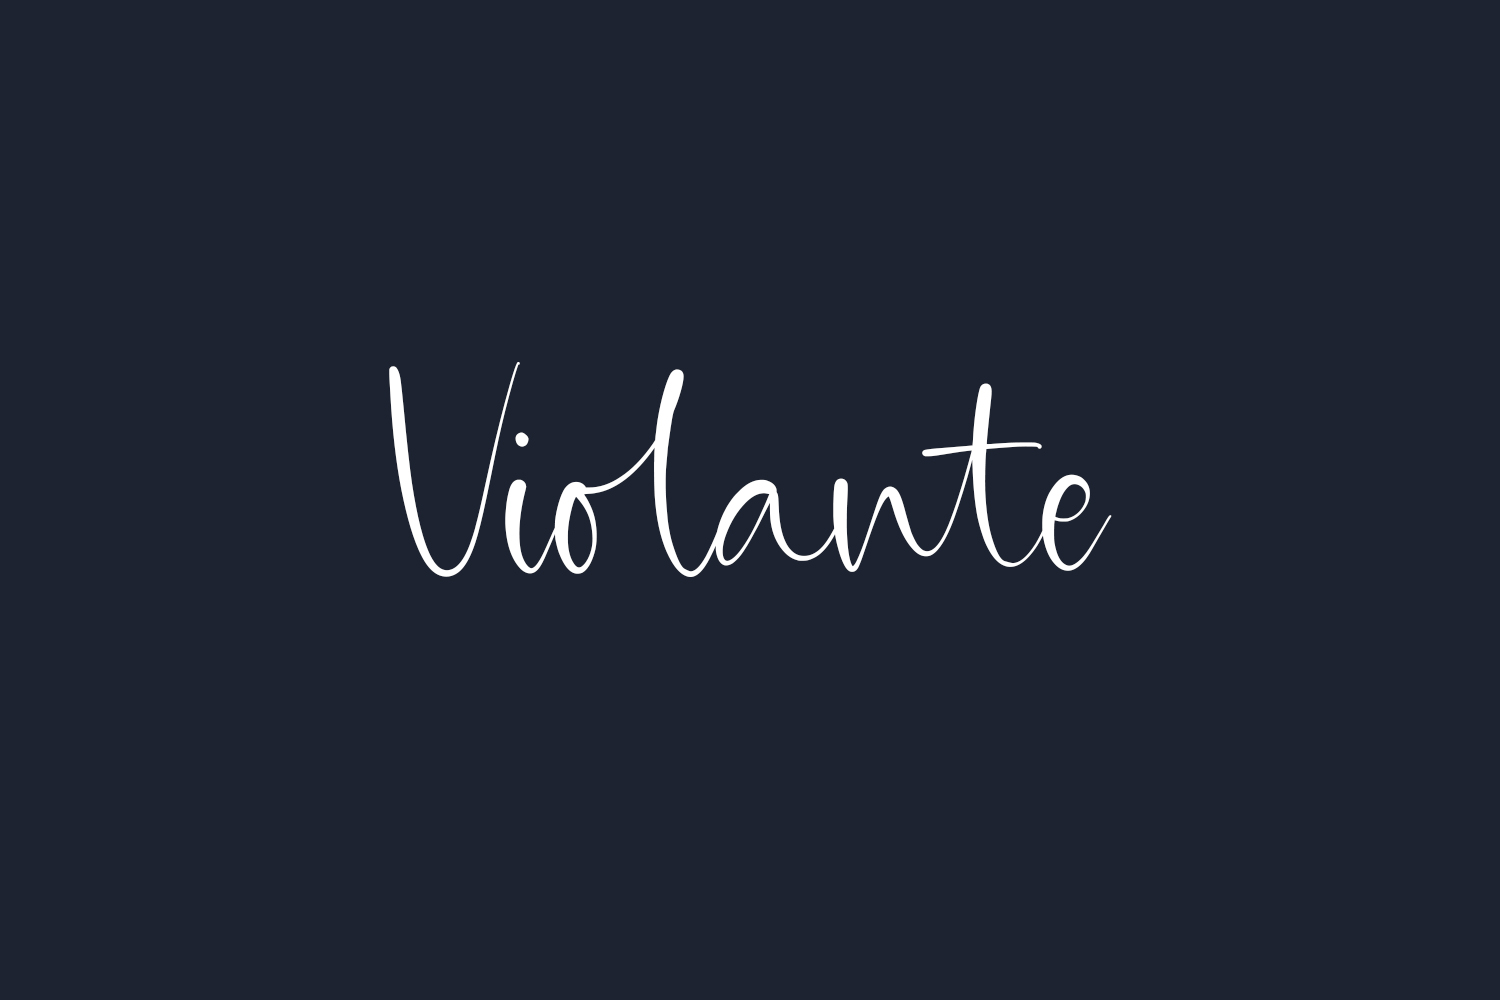 Violante Free Font